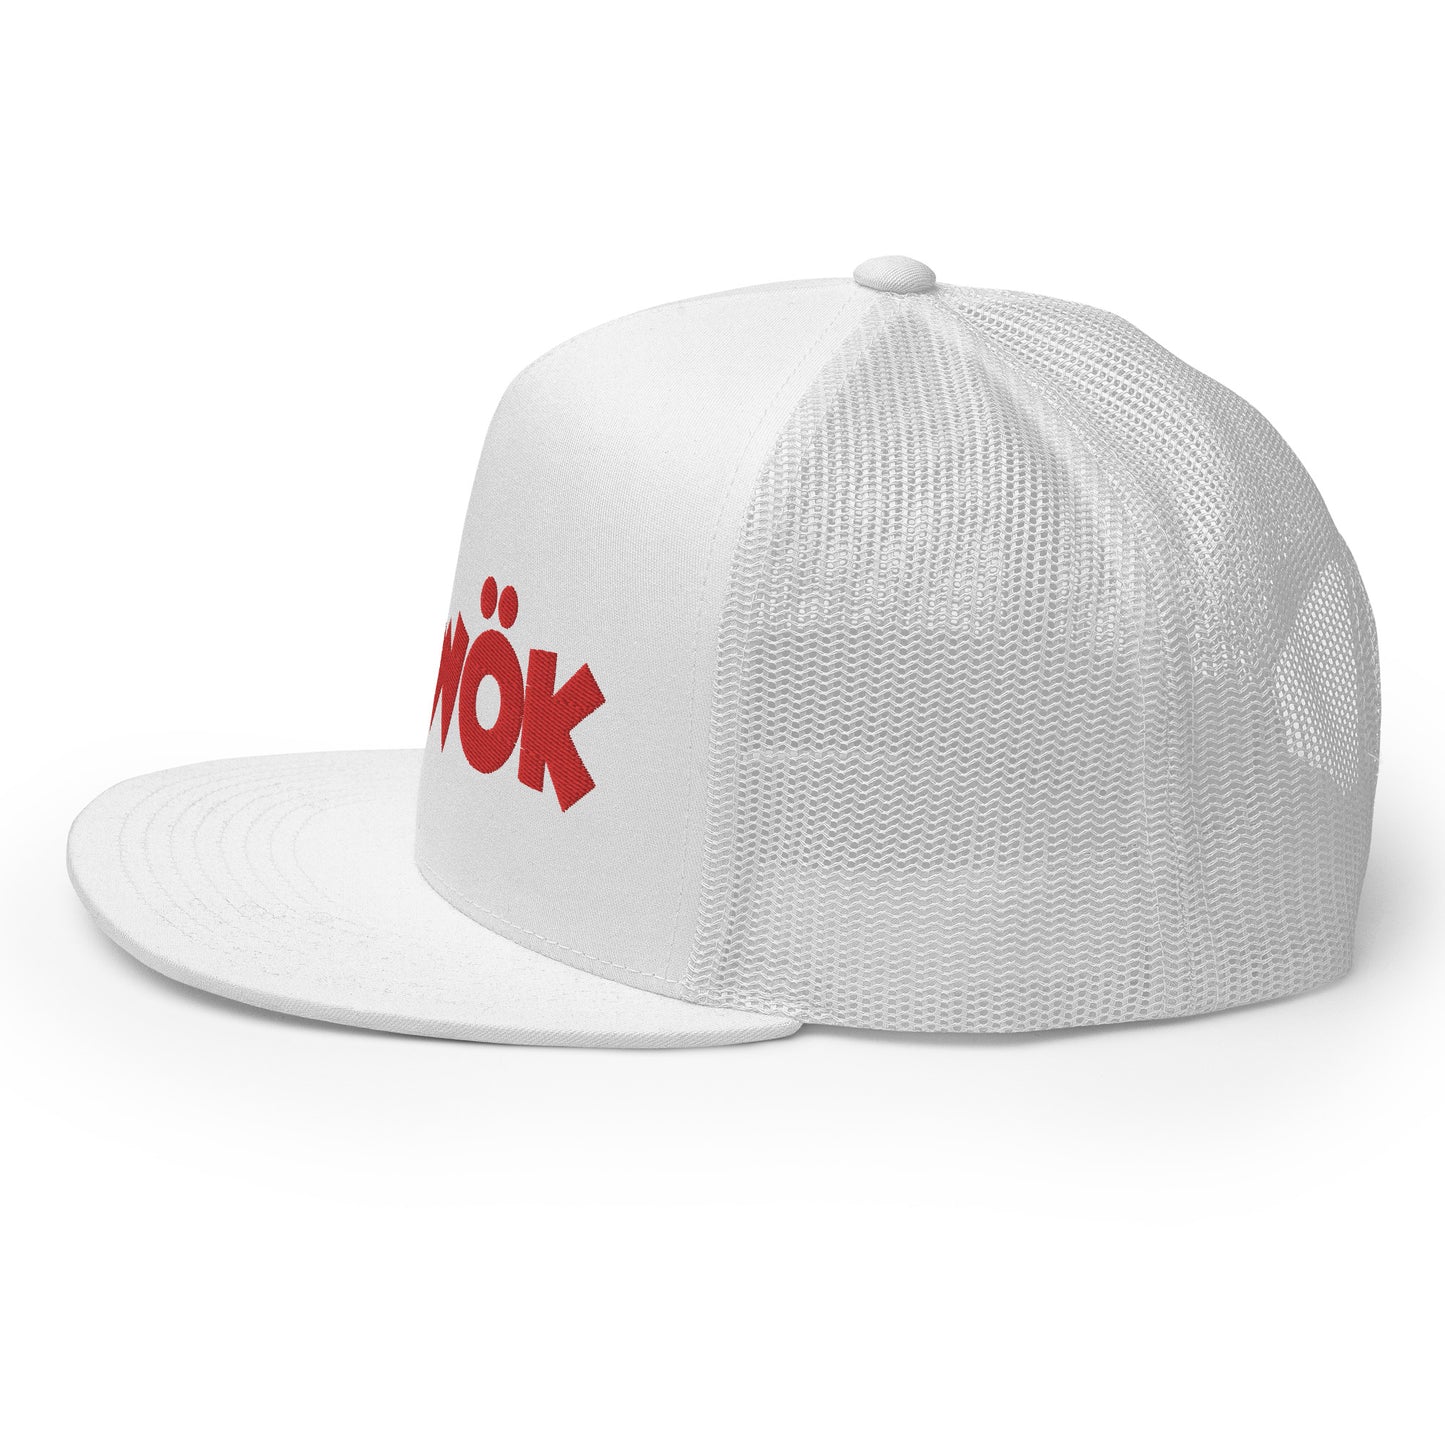 Skwok Brand / Hat / Trucker Cap / OG Logo / 3D Puff / White / Red